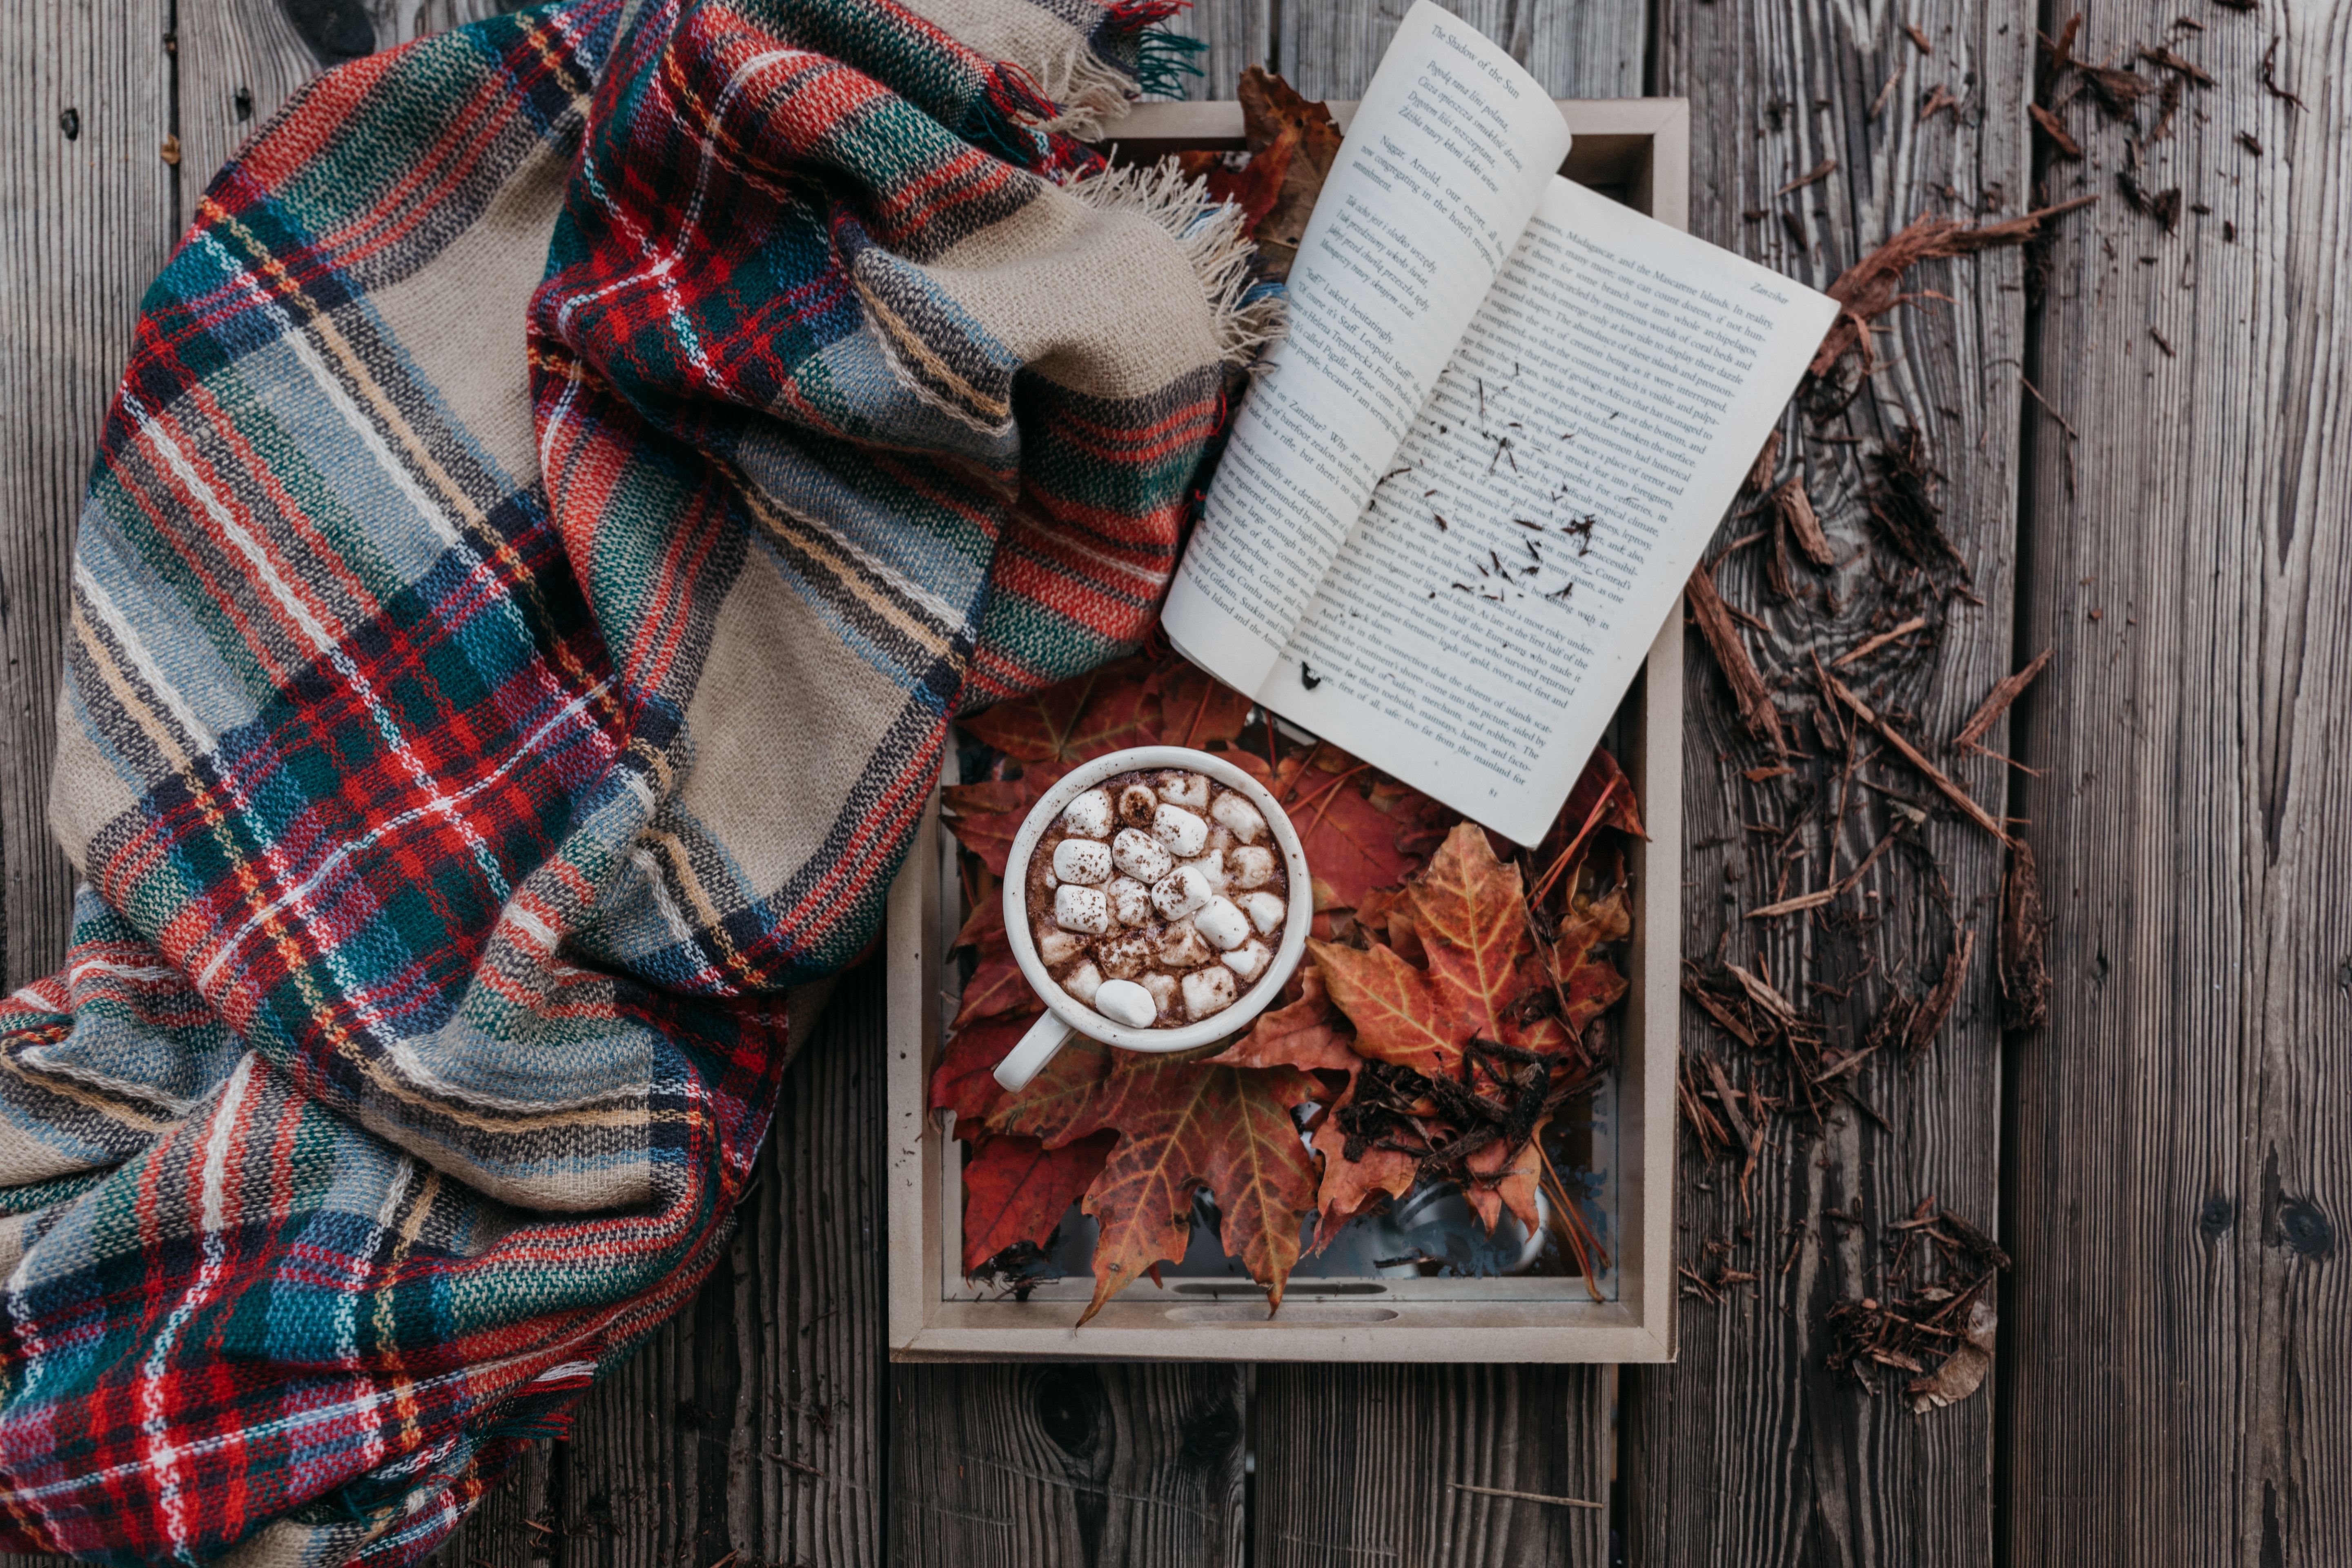 marshmallow, book, food, autumn, zephyr, cocoa, plaid UHD